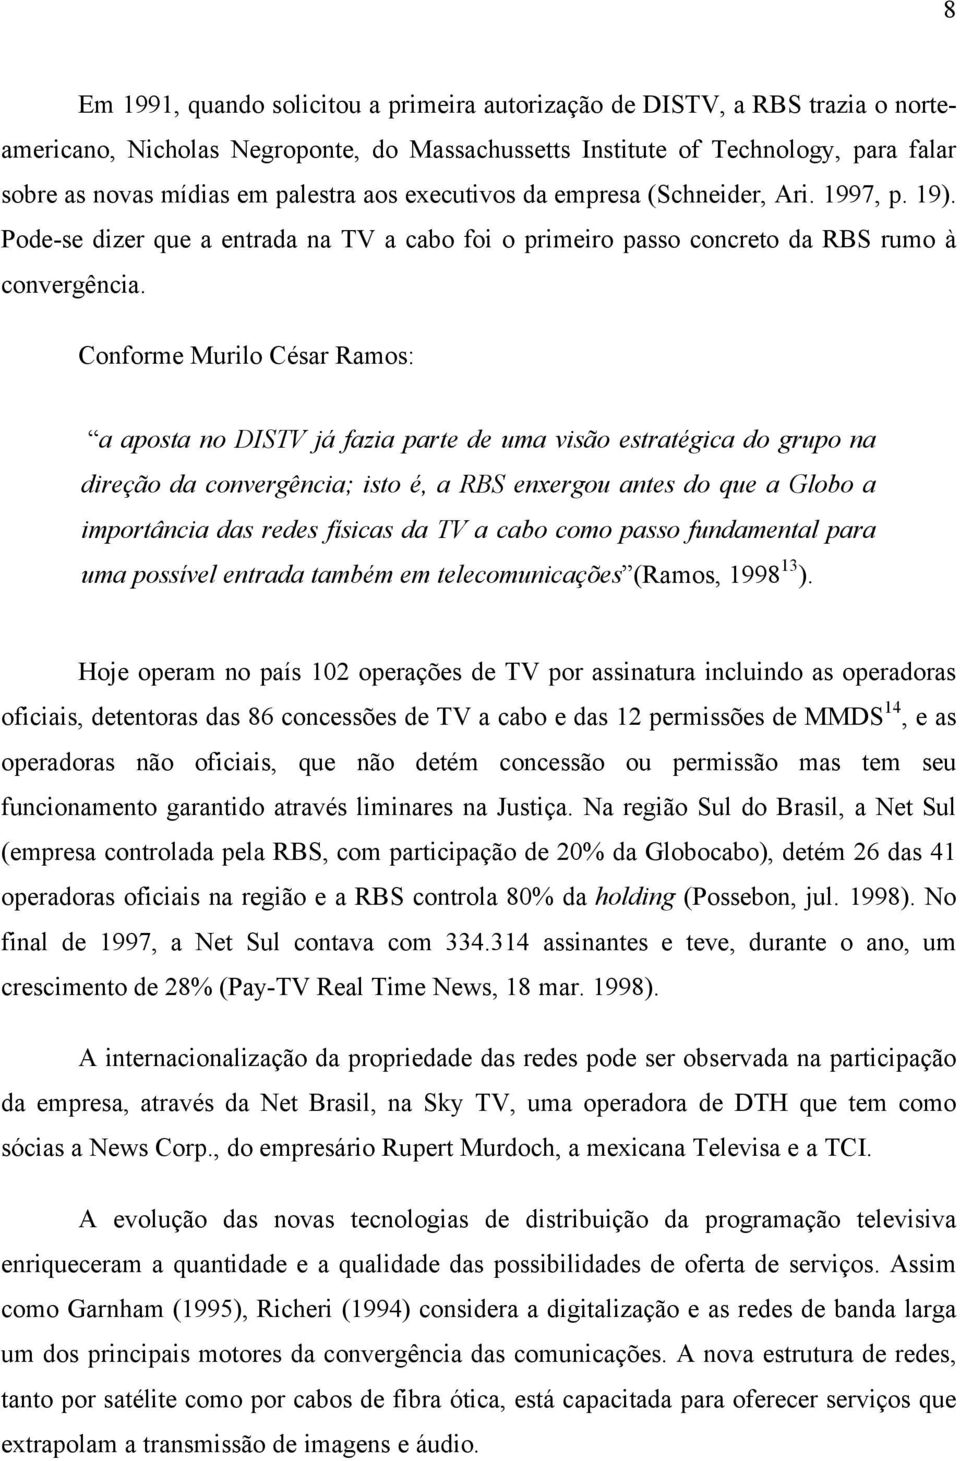 Conforme Murilo César Ramos: a aposta no DISTV já fazia parte de uma visão estratégica do grupo na direção da convergência; isto é, a RBS enxergou antes do que a Globo a importância das redes físicas